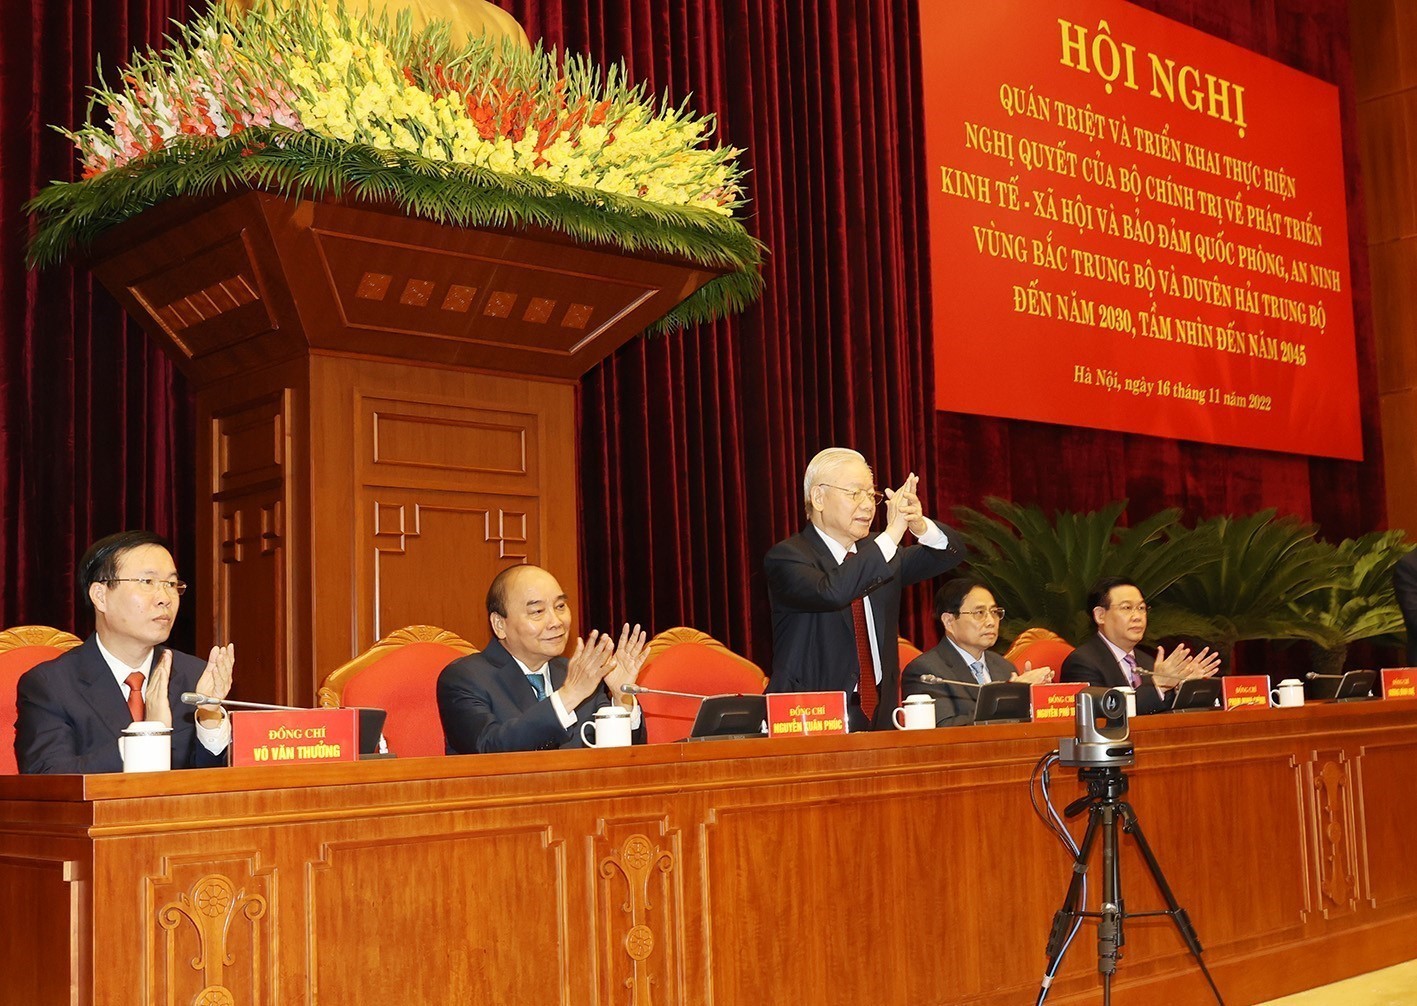 Tổng Bí thư Nguyễn Phú Trọng chủ trì hội nghị về phương hướng phát triển vùng Bắc Trung Bộ và duyên hải Trung Bộ